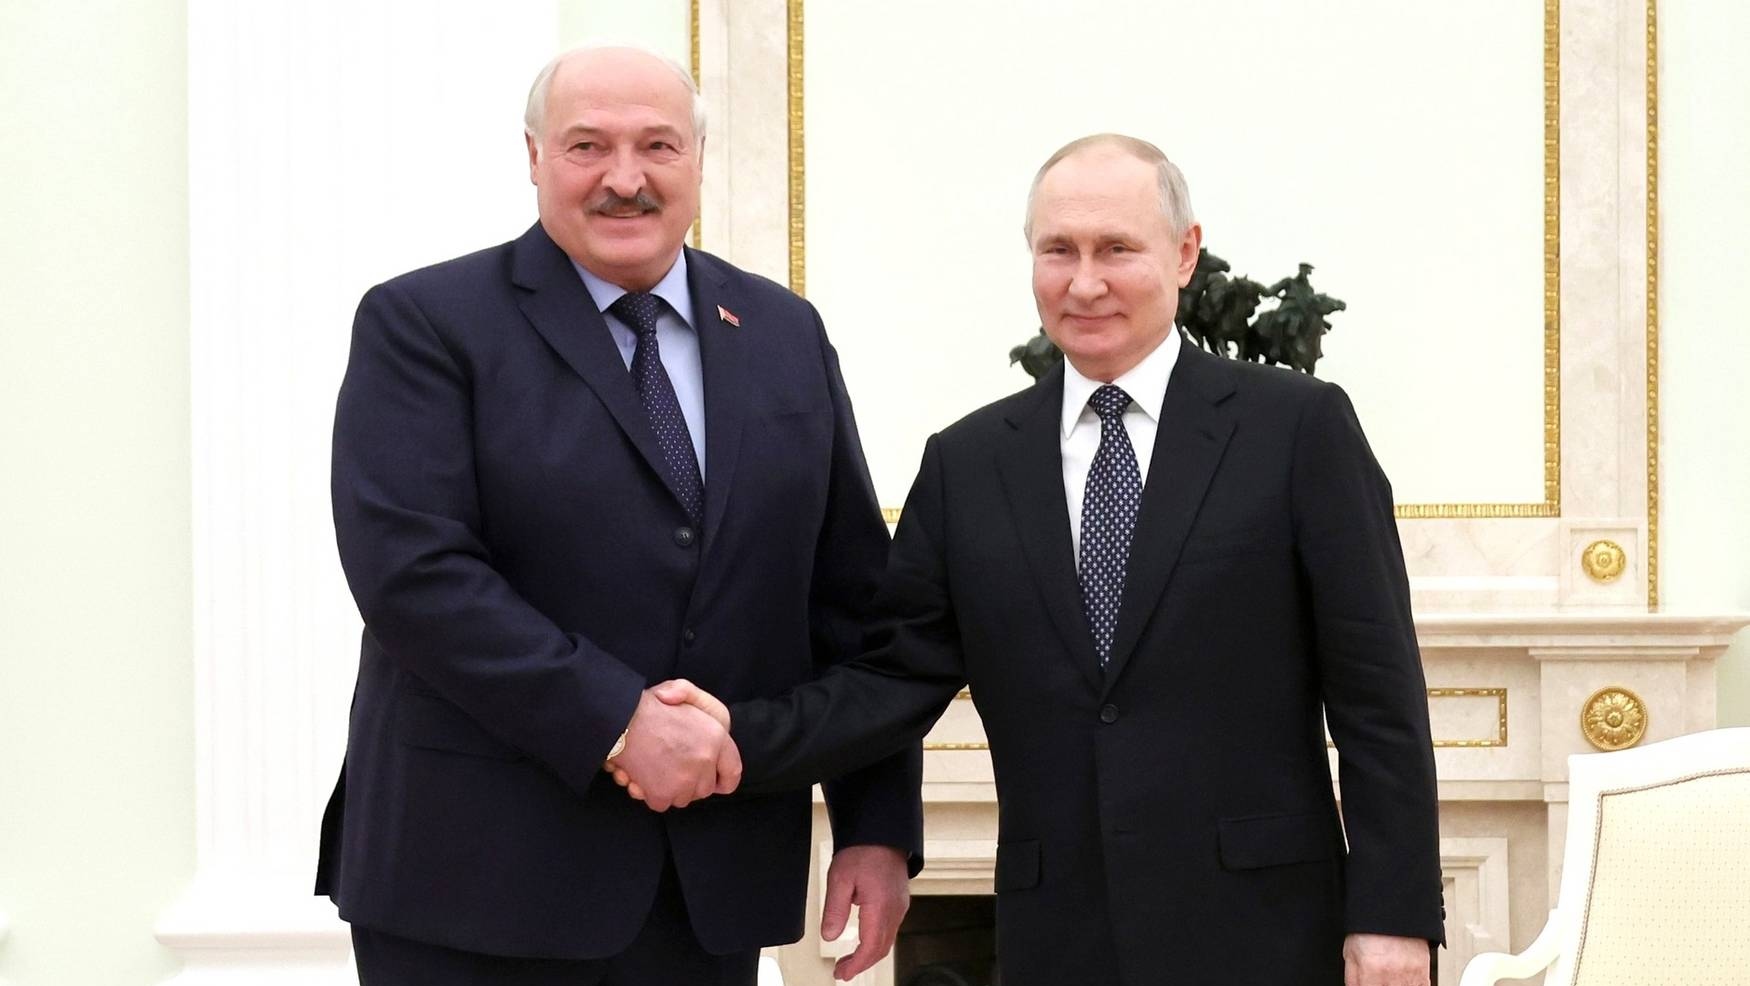 Image by kremlin.ru Alexander Lukashenko and Vladimir Putin